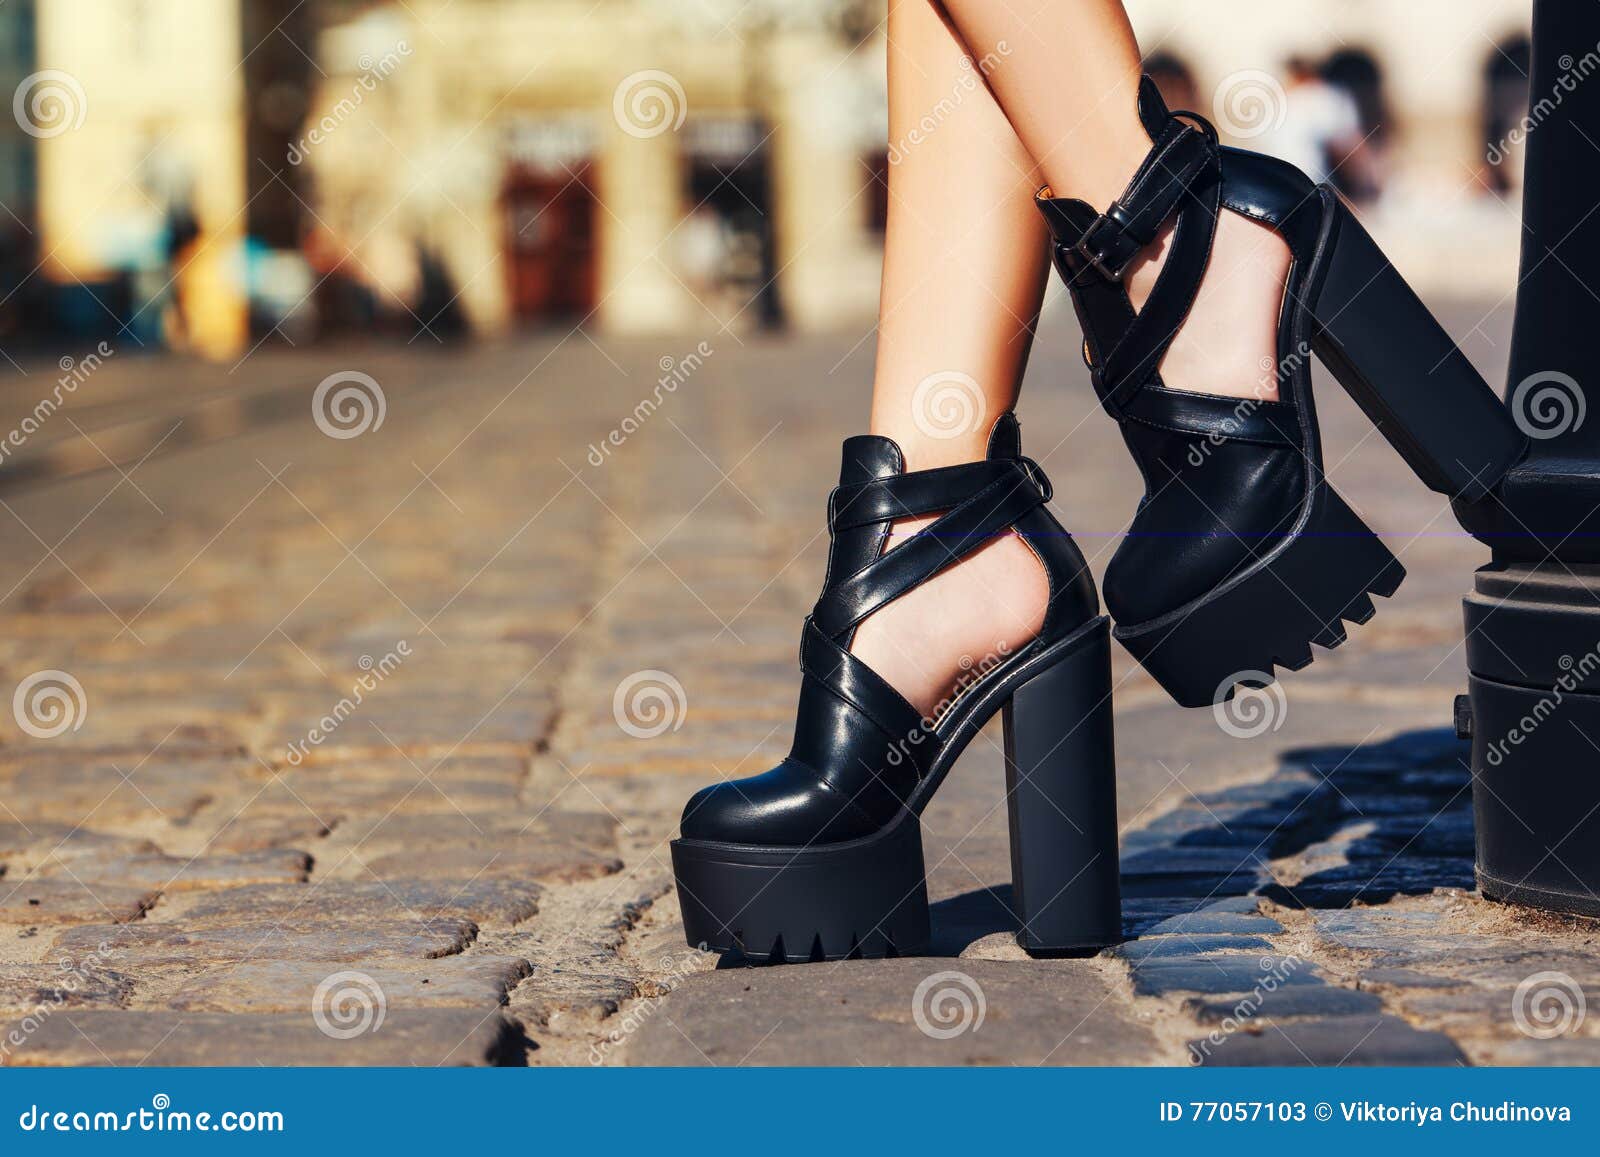 Equipo Elegante Zapatos De Cuero Negros Del Verano Muchacha De Moda Que Presenta En La Calle La Ciudad Vieja Imagen de archivo - Imagen de fondo, gente: 77057103